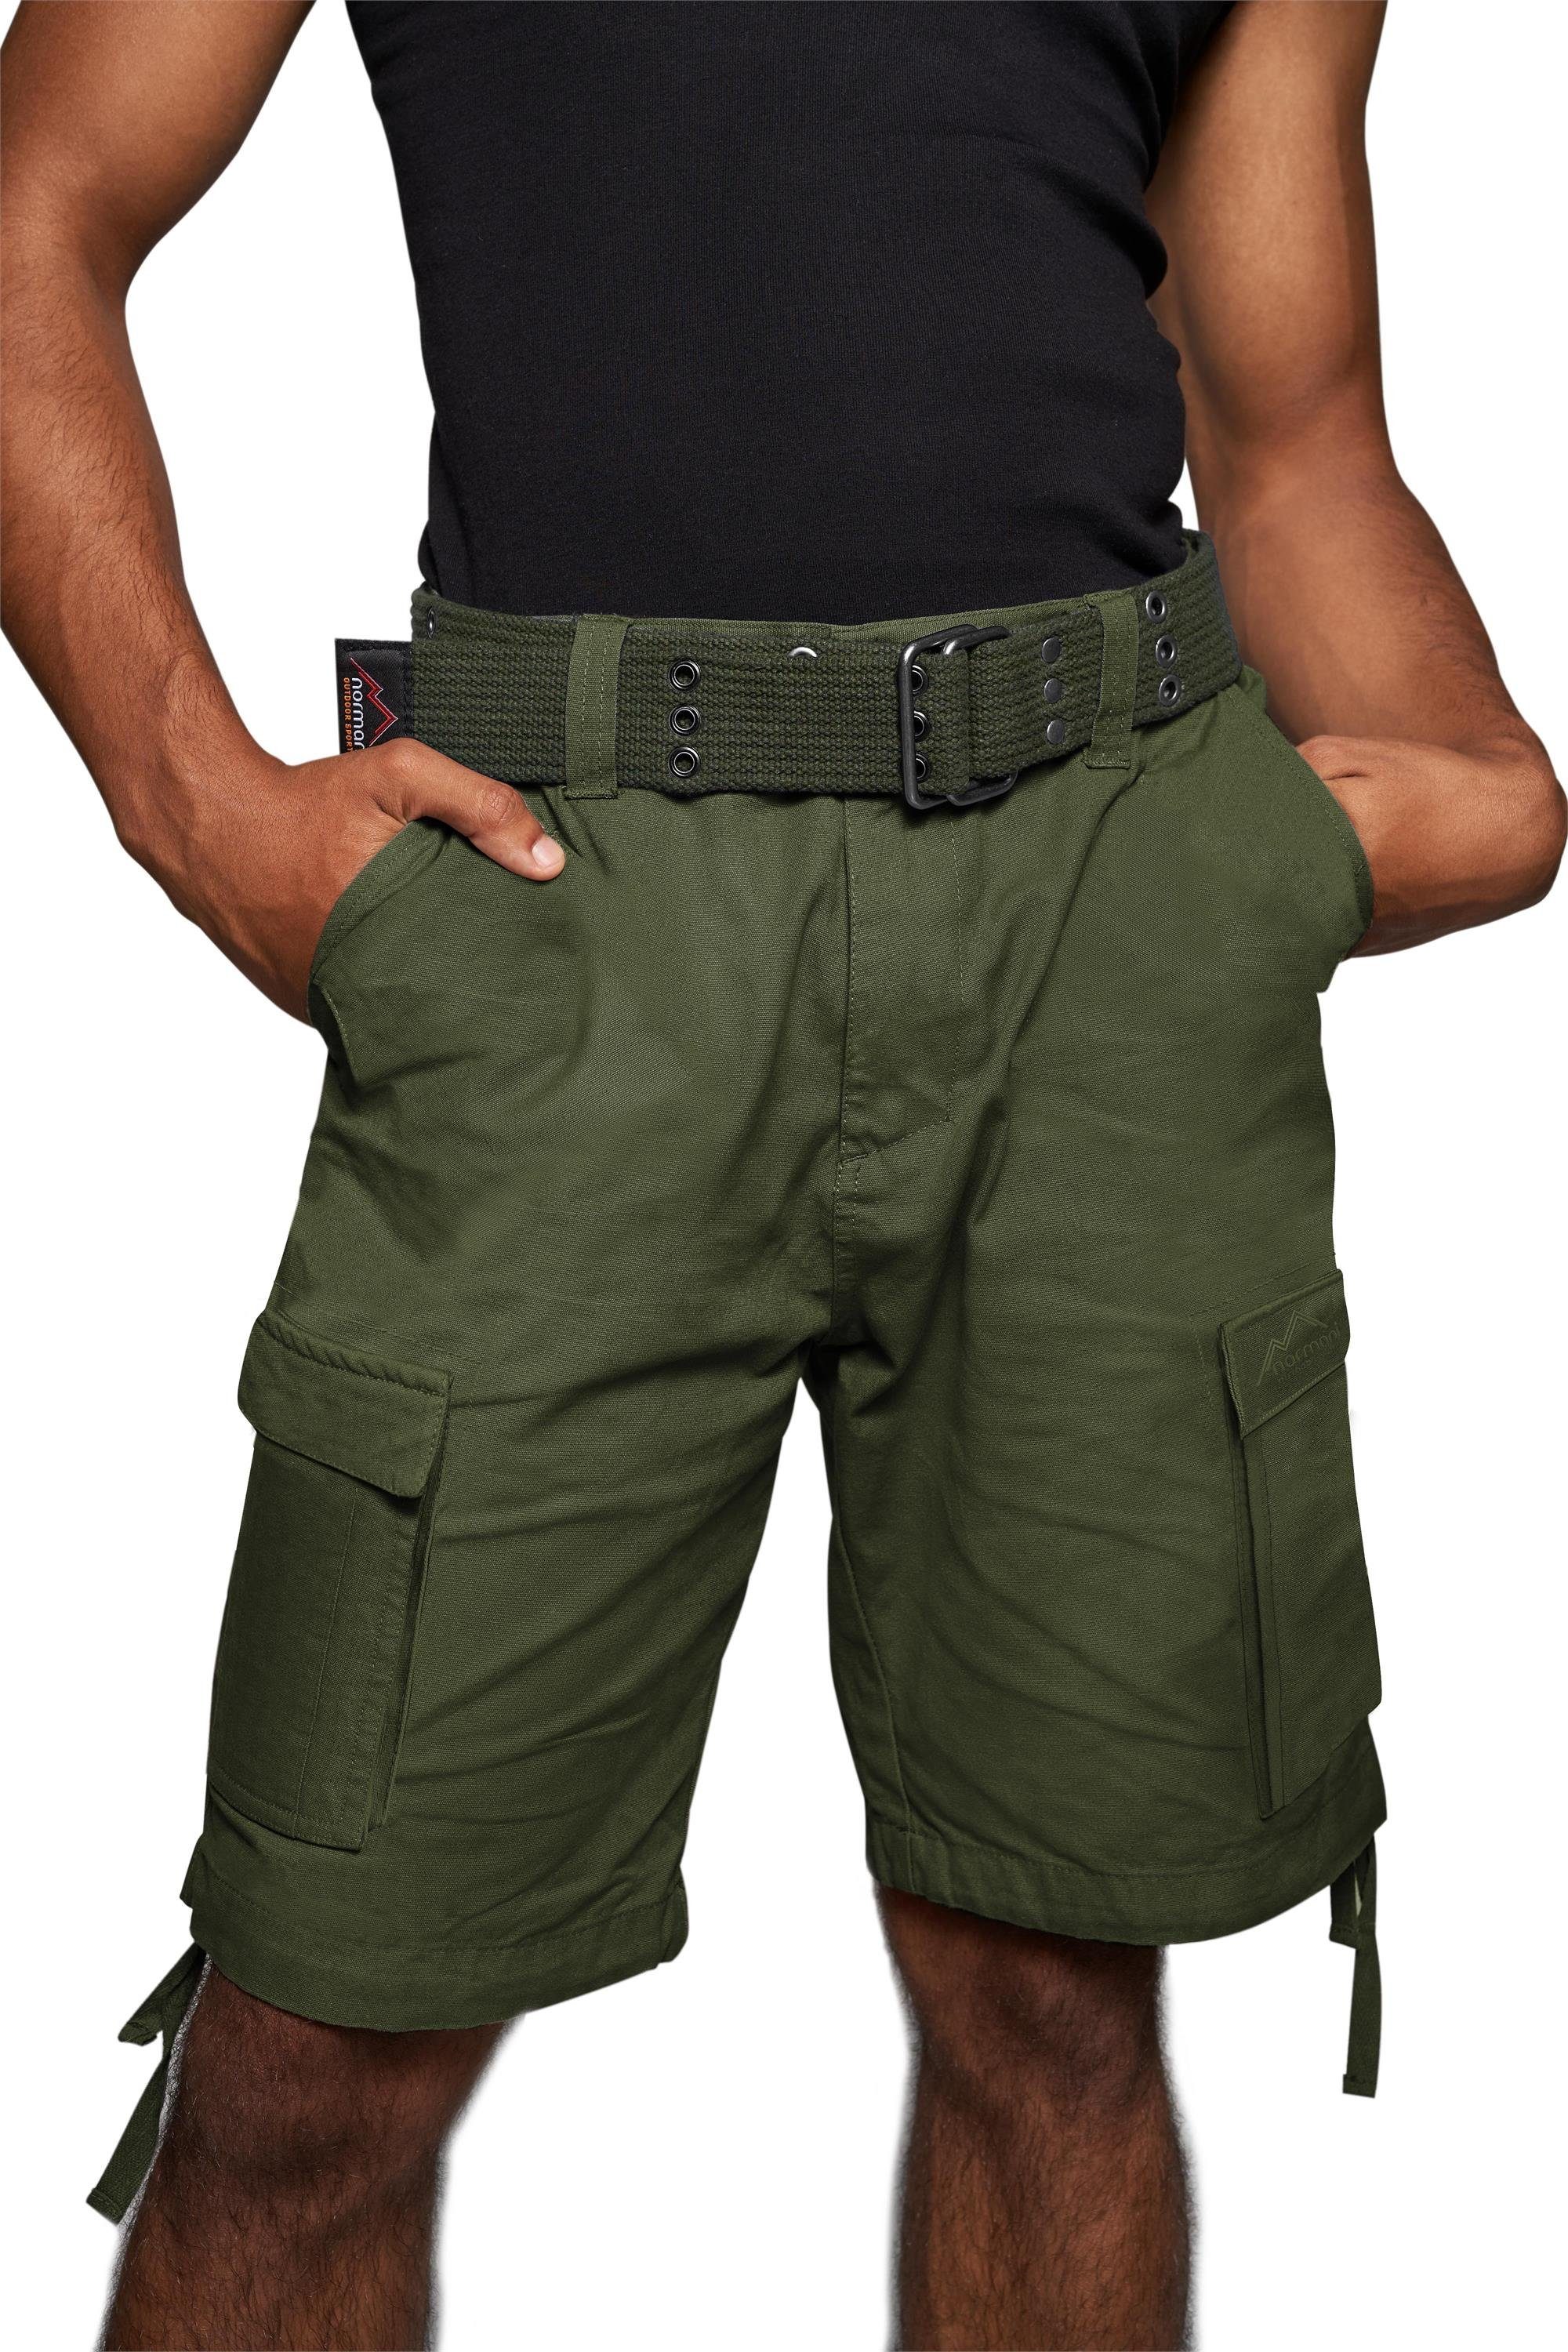 normani Bermudas Sommer-Shorts „Kalahari“ mit Gürtel „Wadi“ kurze Sommerhose Freizeithose Vintage-Shorts - 100% nachhaltige Bio-Baumwolle Oliv